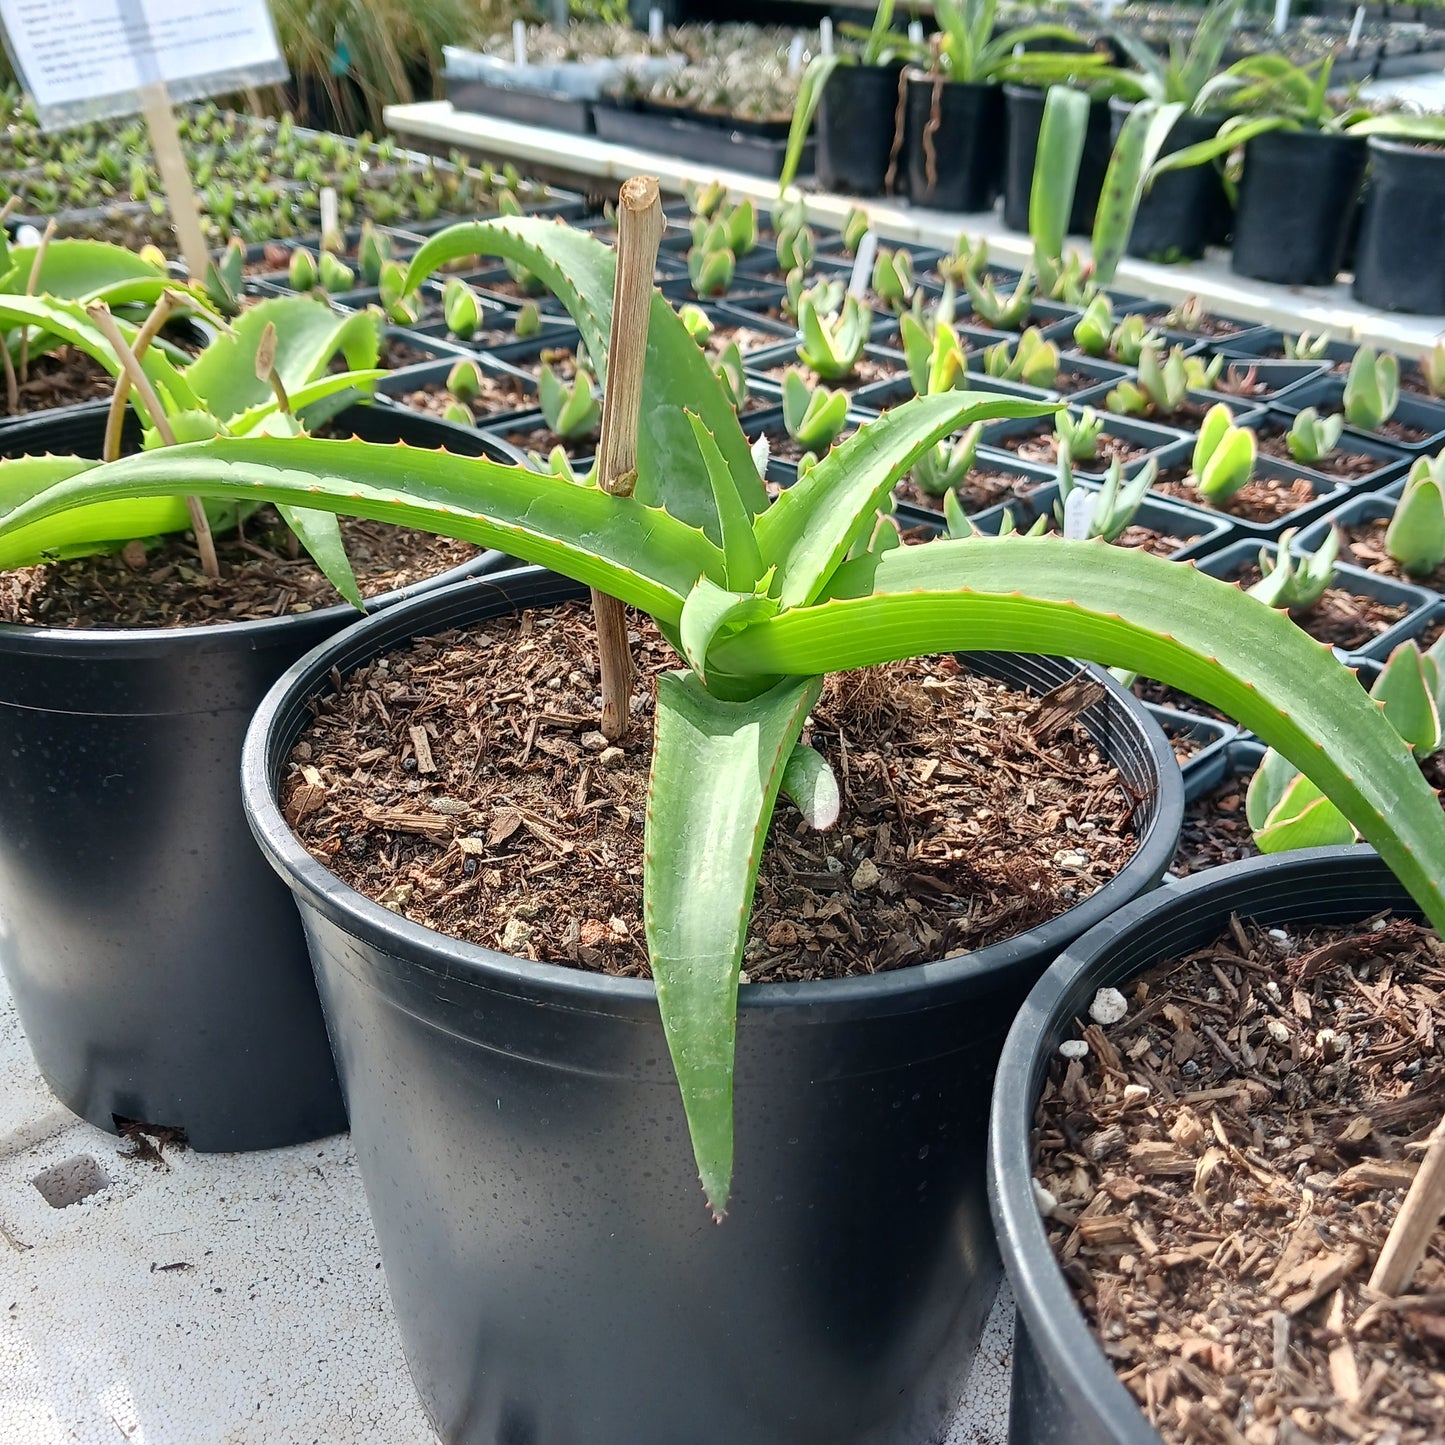 Aloe vanbalenii - 2ga